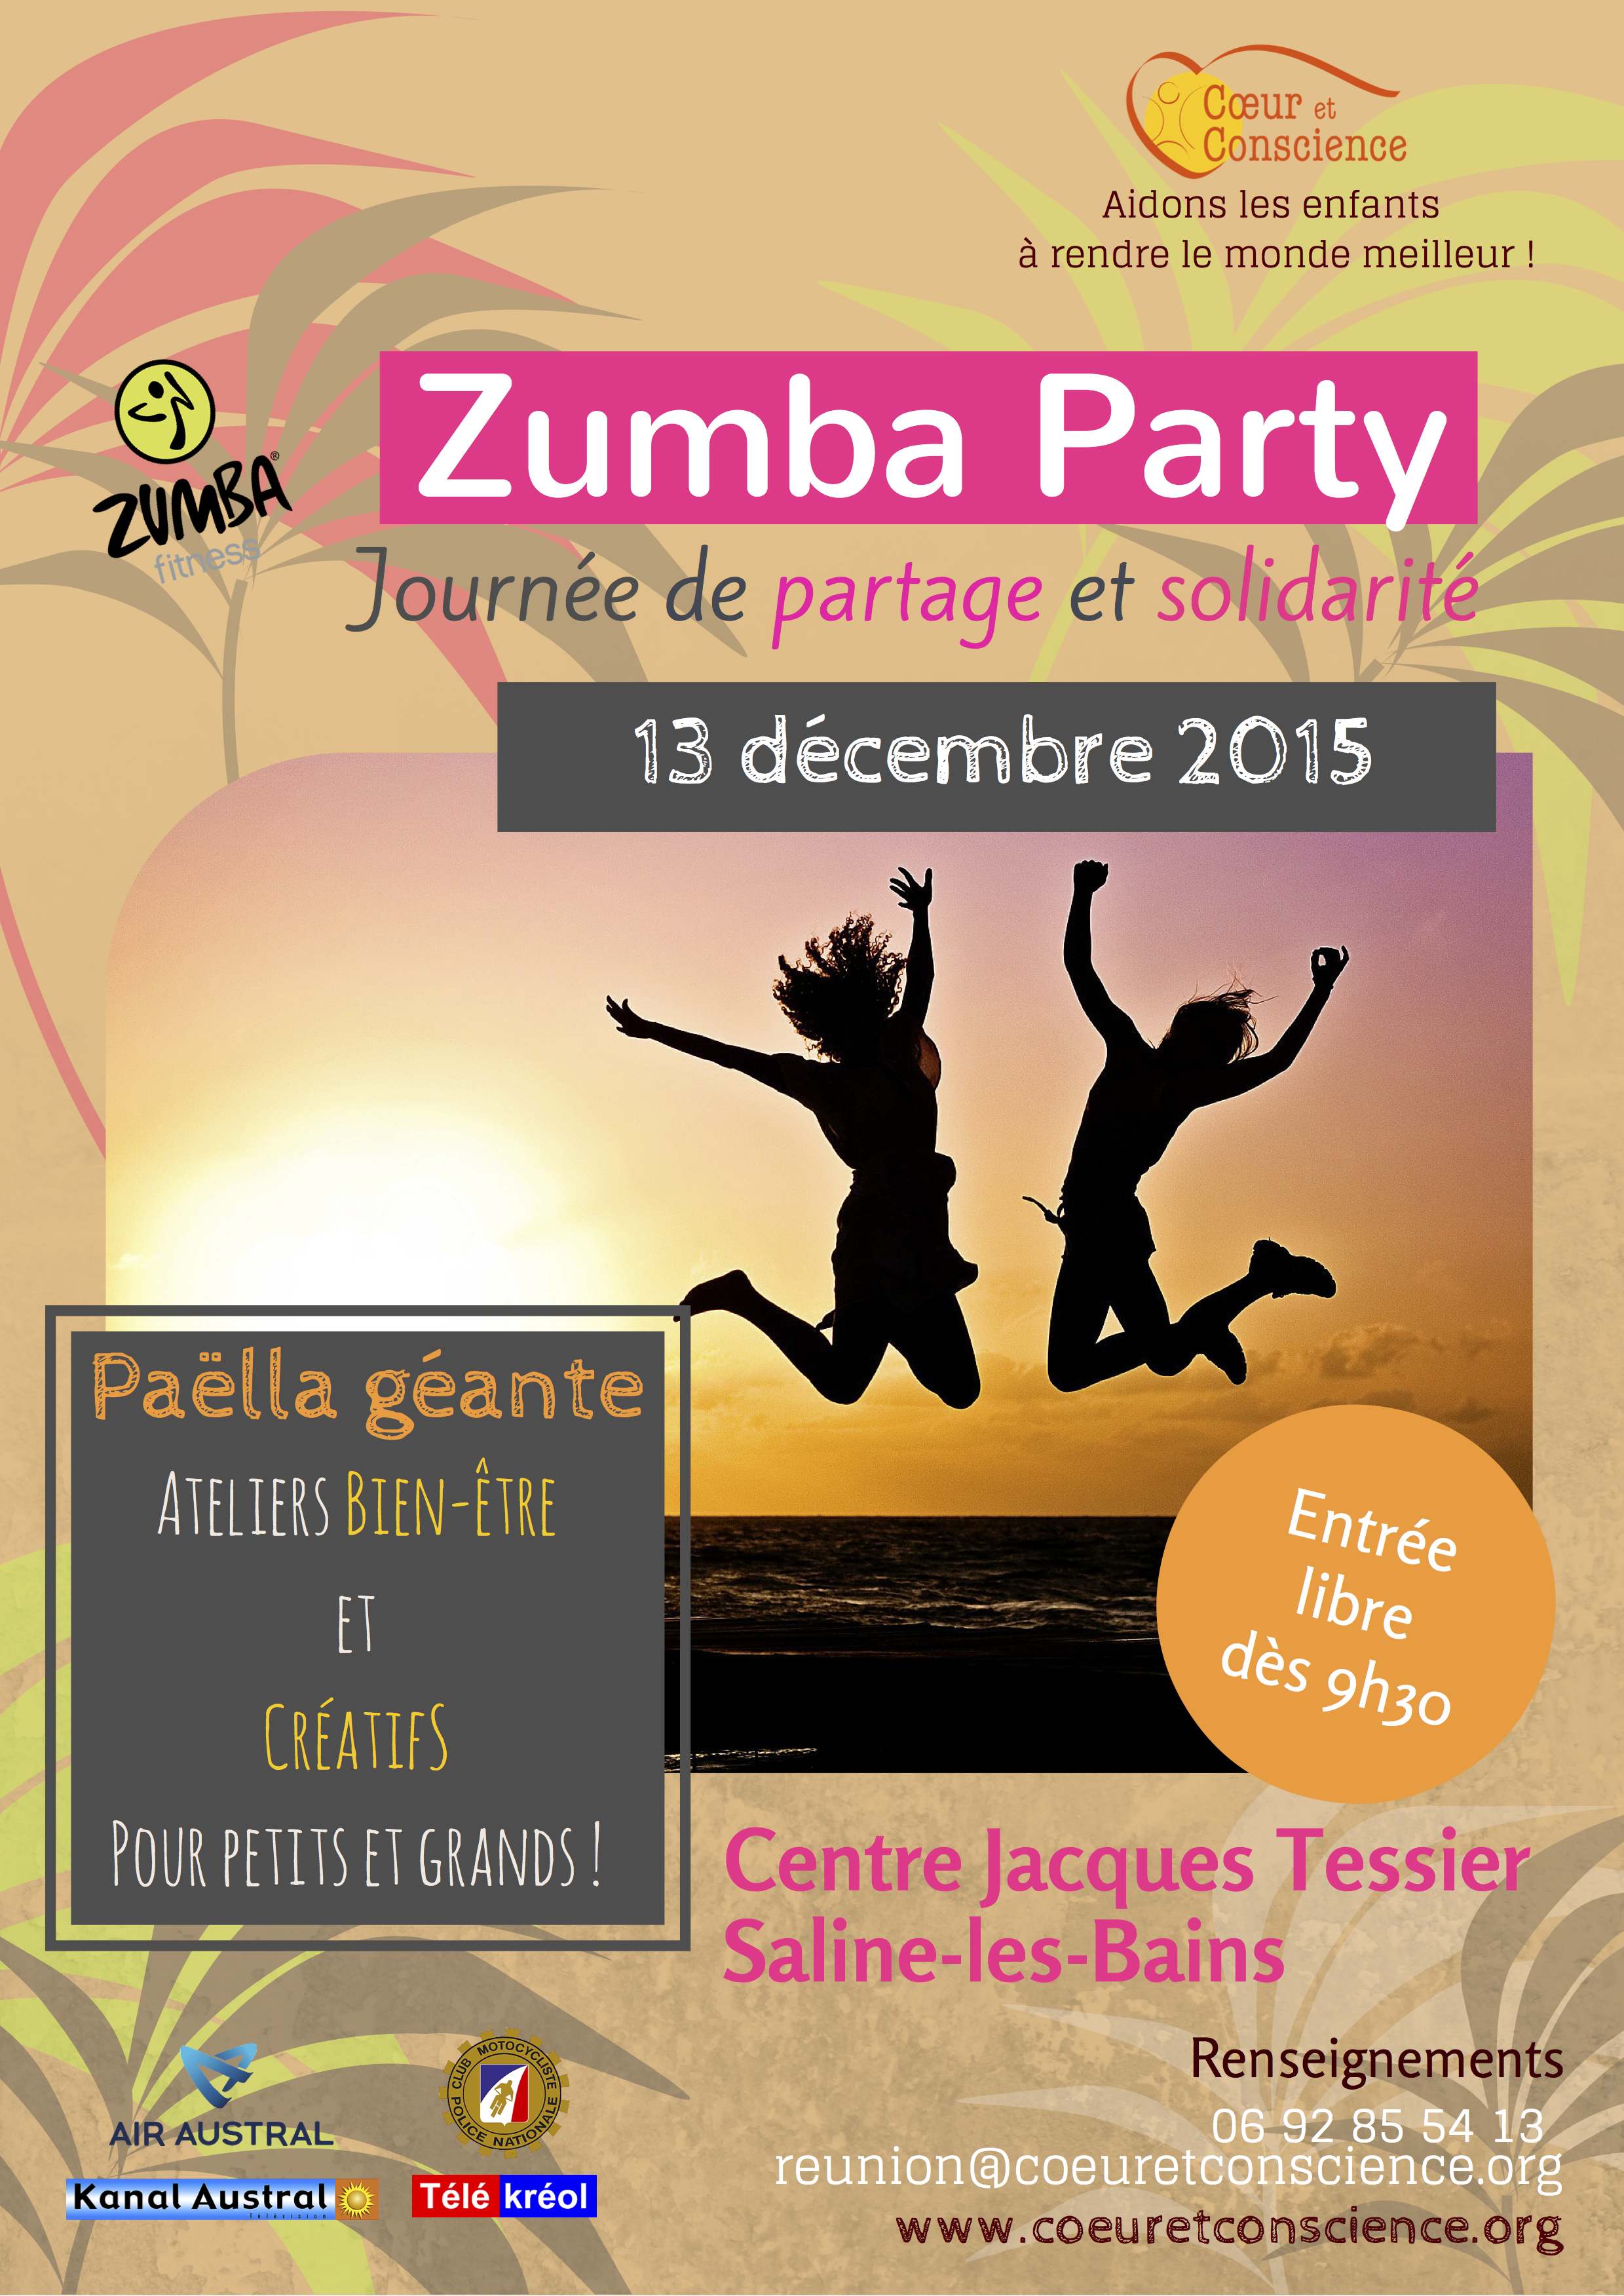 Une Zumba Party pour lutter contre la malnutrition ce dimanche